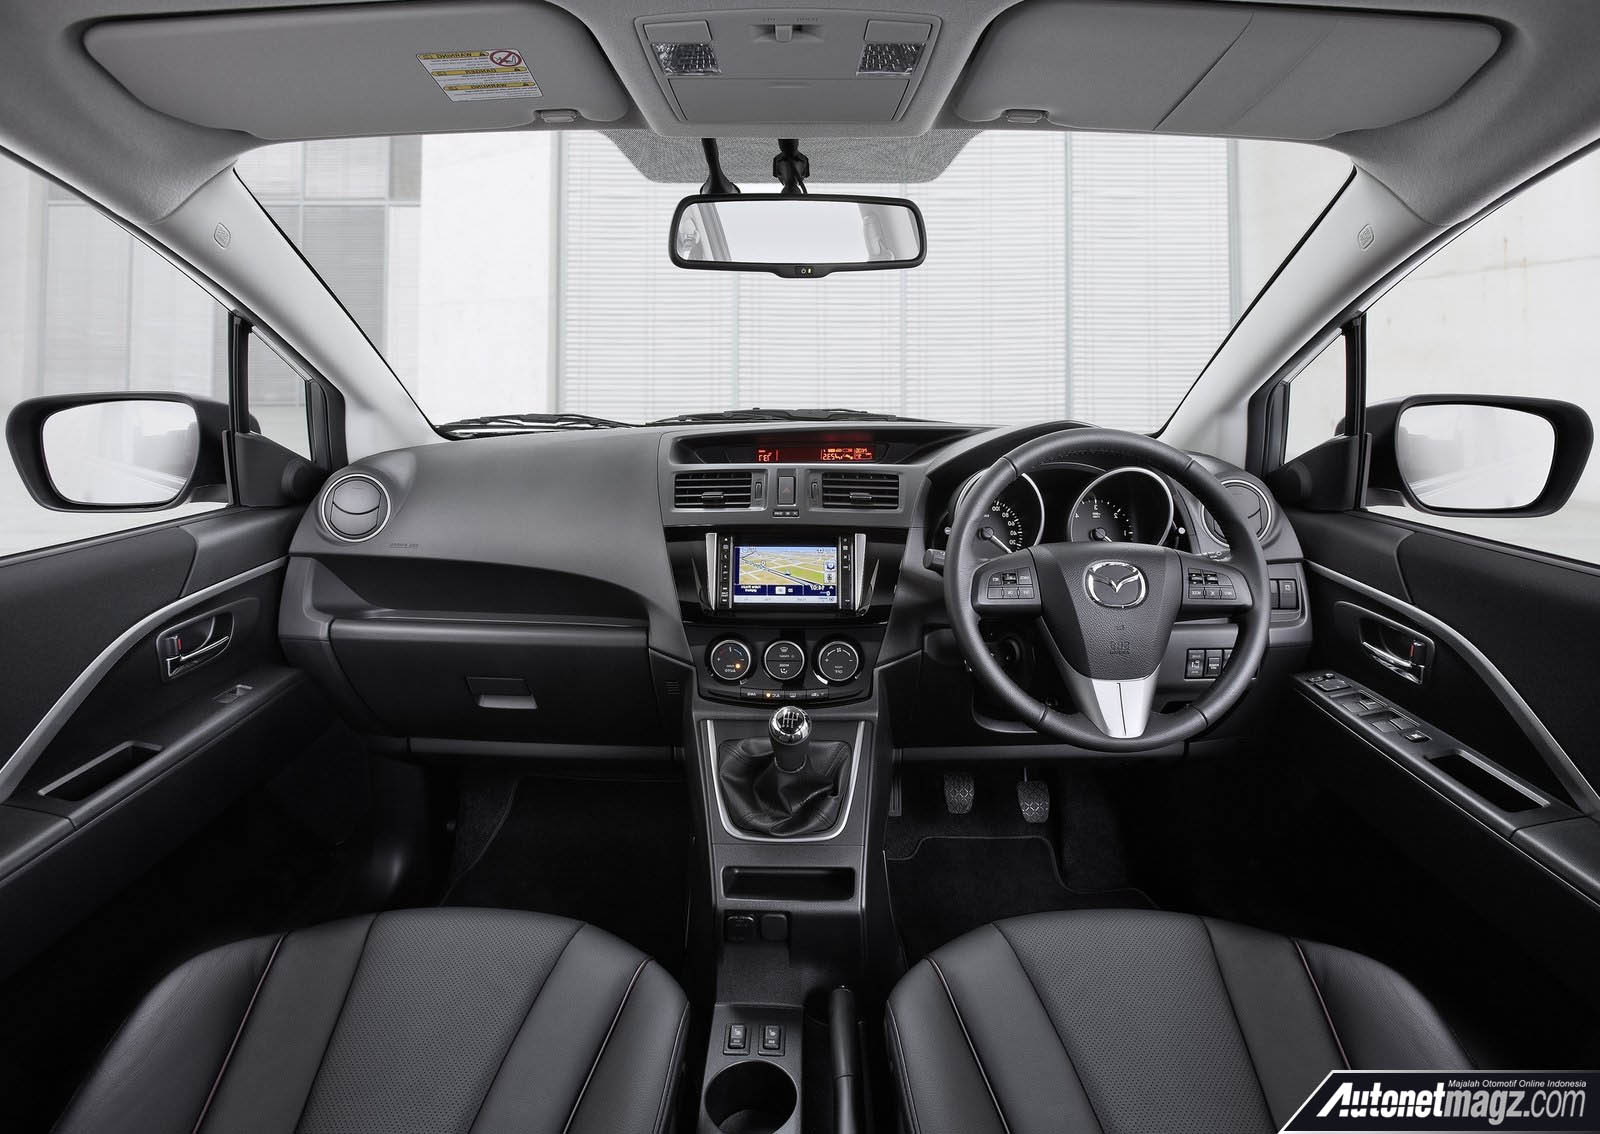 Berita, interior New Mazda 5: Nasib Mazda 5 Saat Ini, Hanya Sekedar Ada?